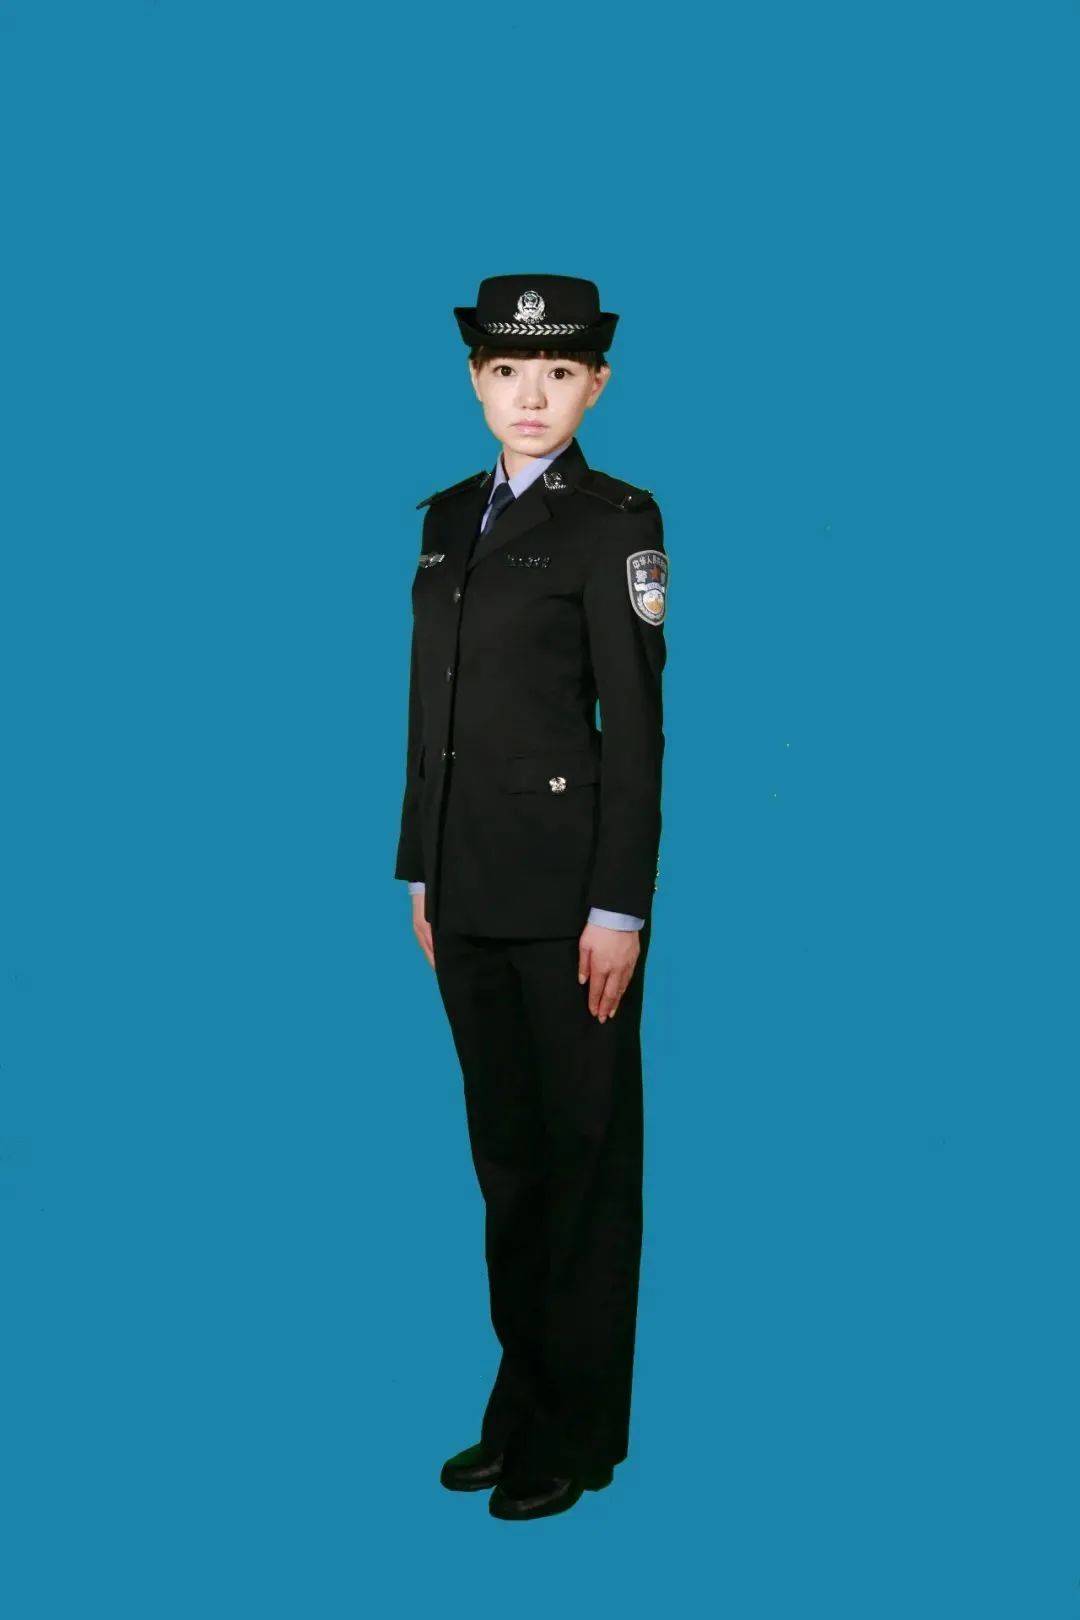 99式警察警服图片